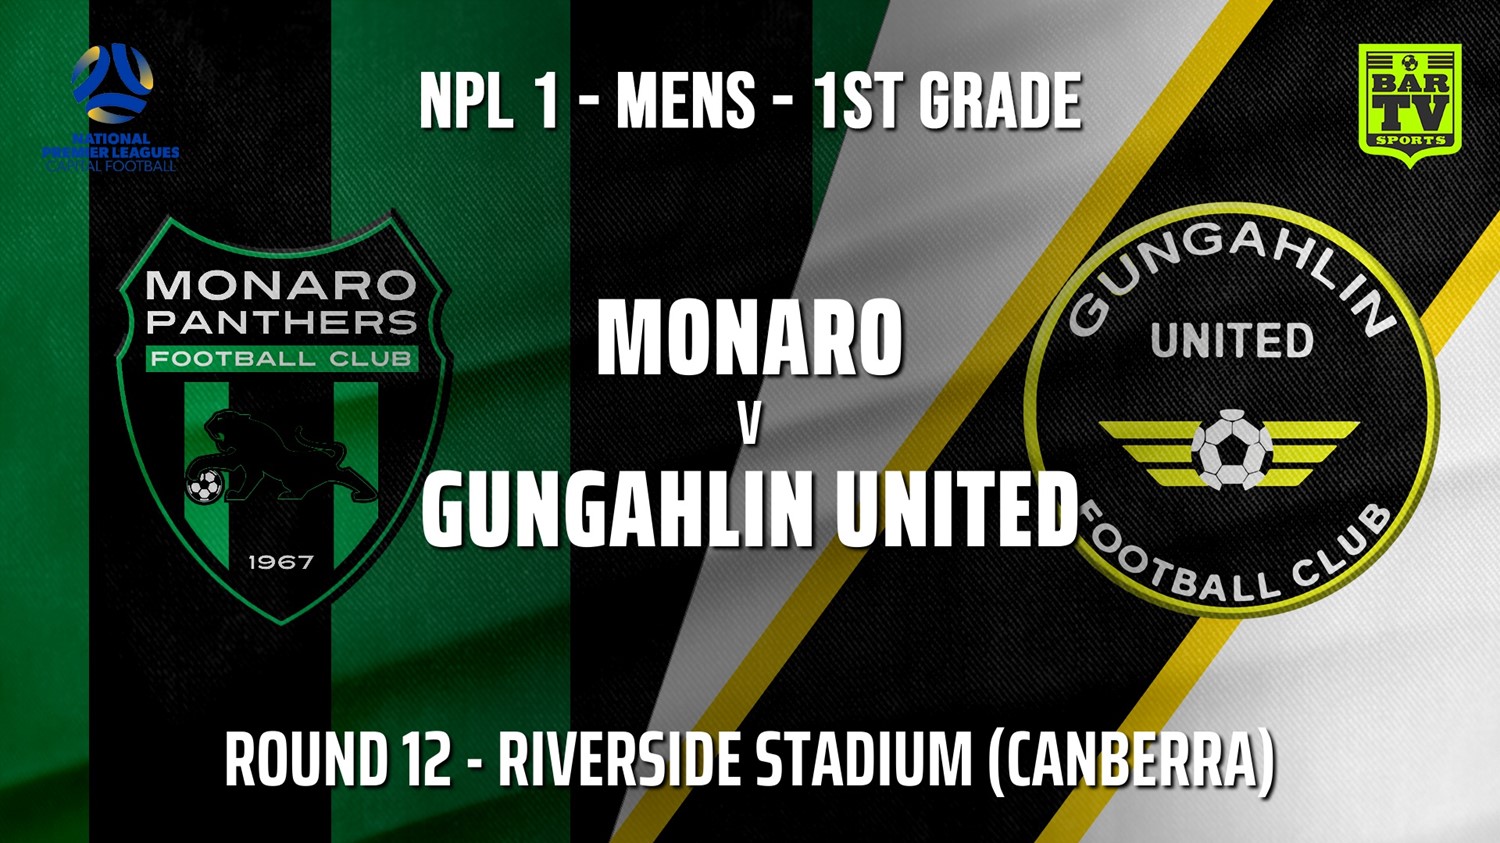 210703-Capital NPL Round 12 - Monaro Panthers FC v Gungahlin United FC Minigame Slate Image